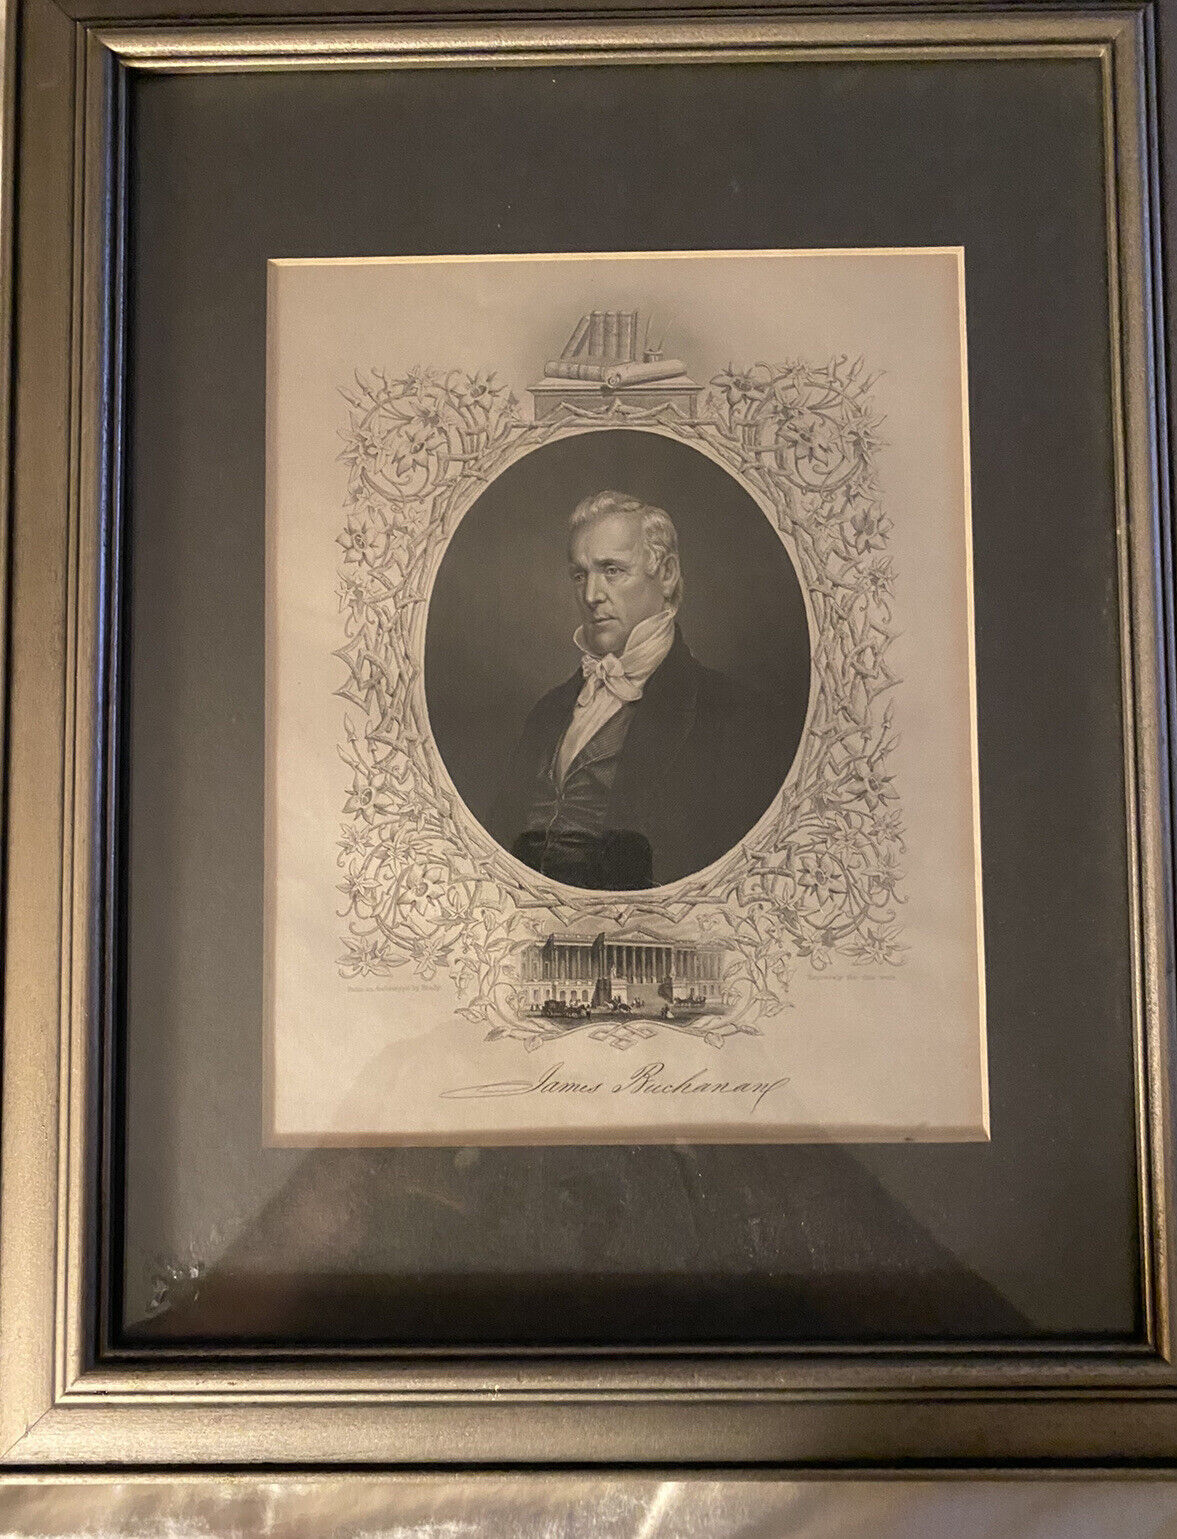 James Buchanan Print after the Matthew Brady Photograph